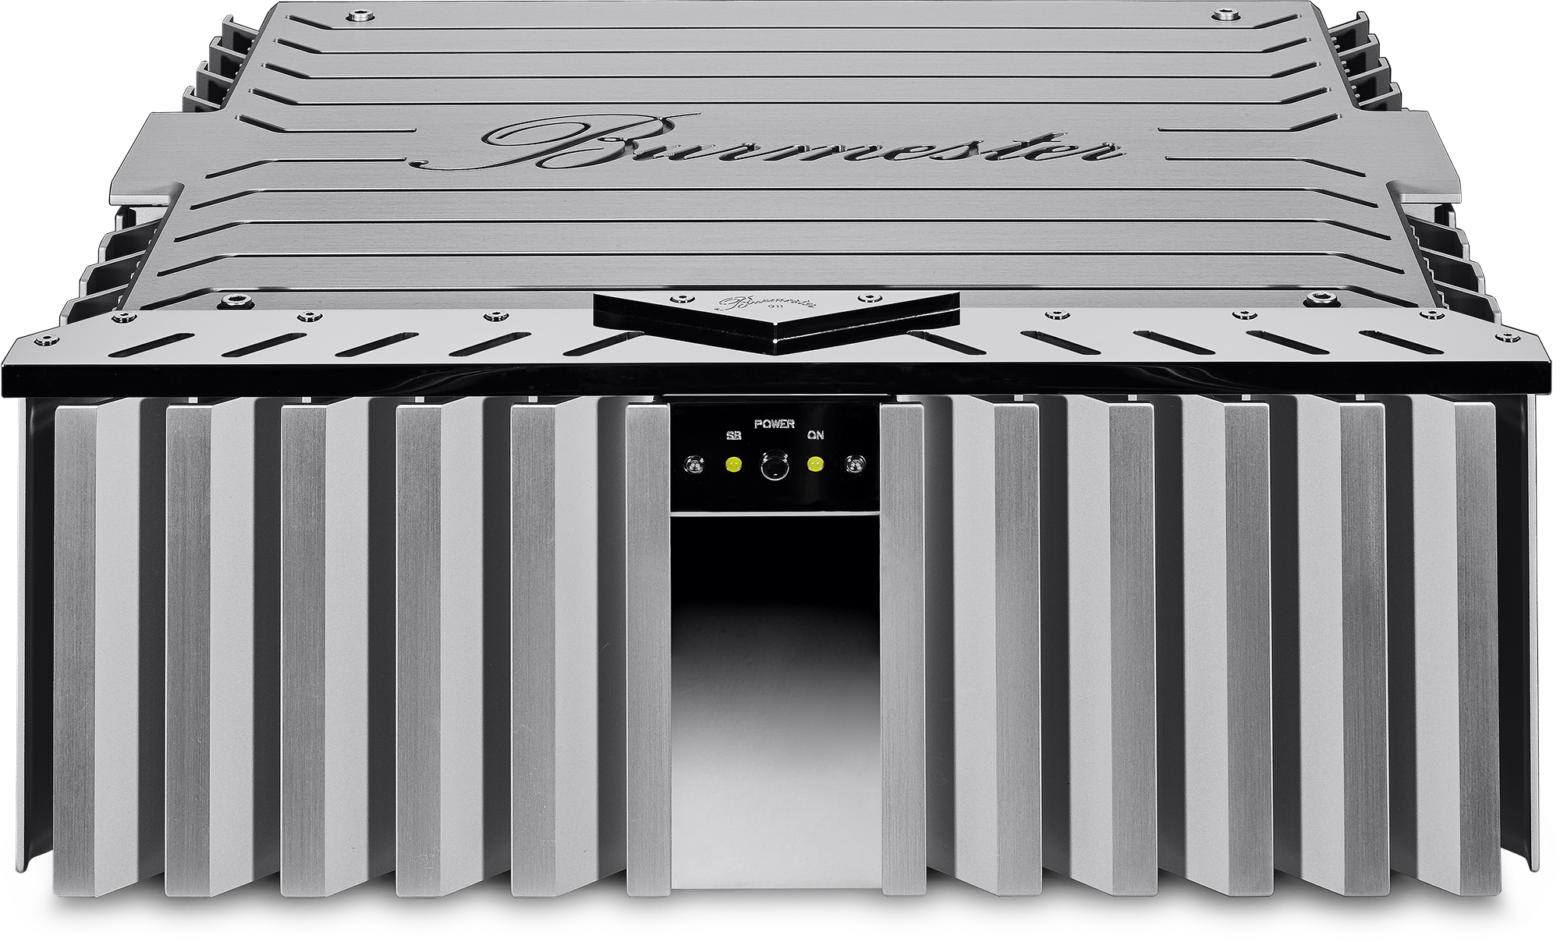 ギンザレコード 年の幕開けを飾る2 0万円オーディオ福袋企画を発表 Musicman